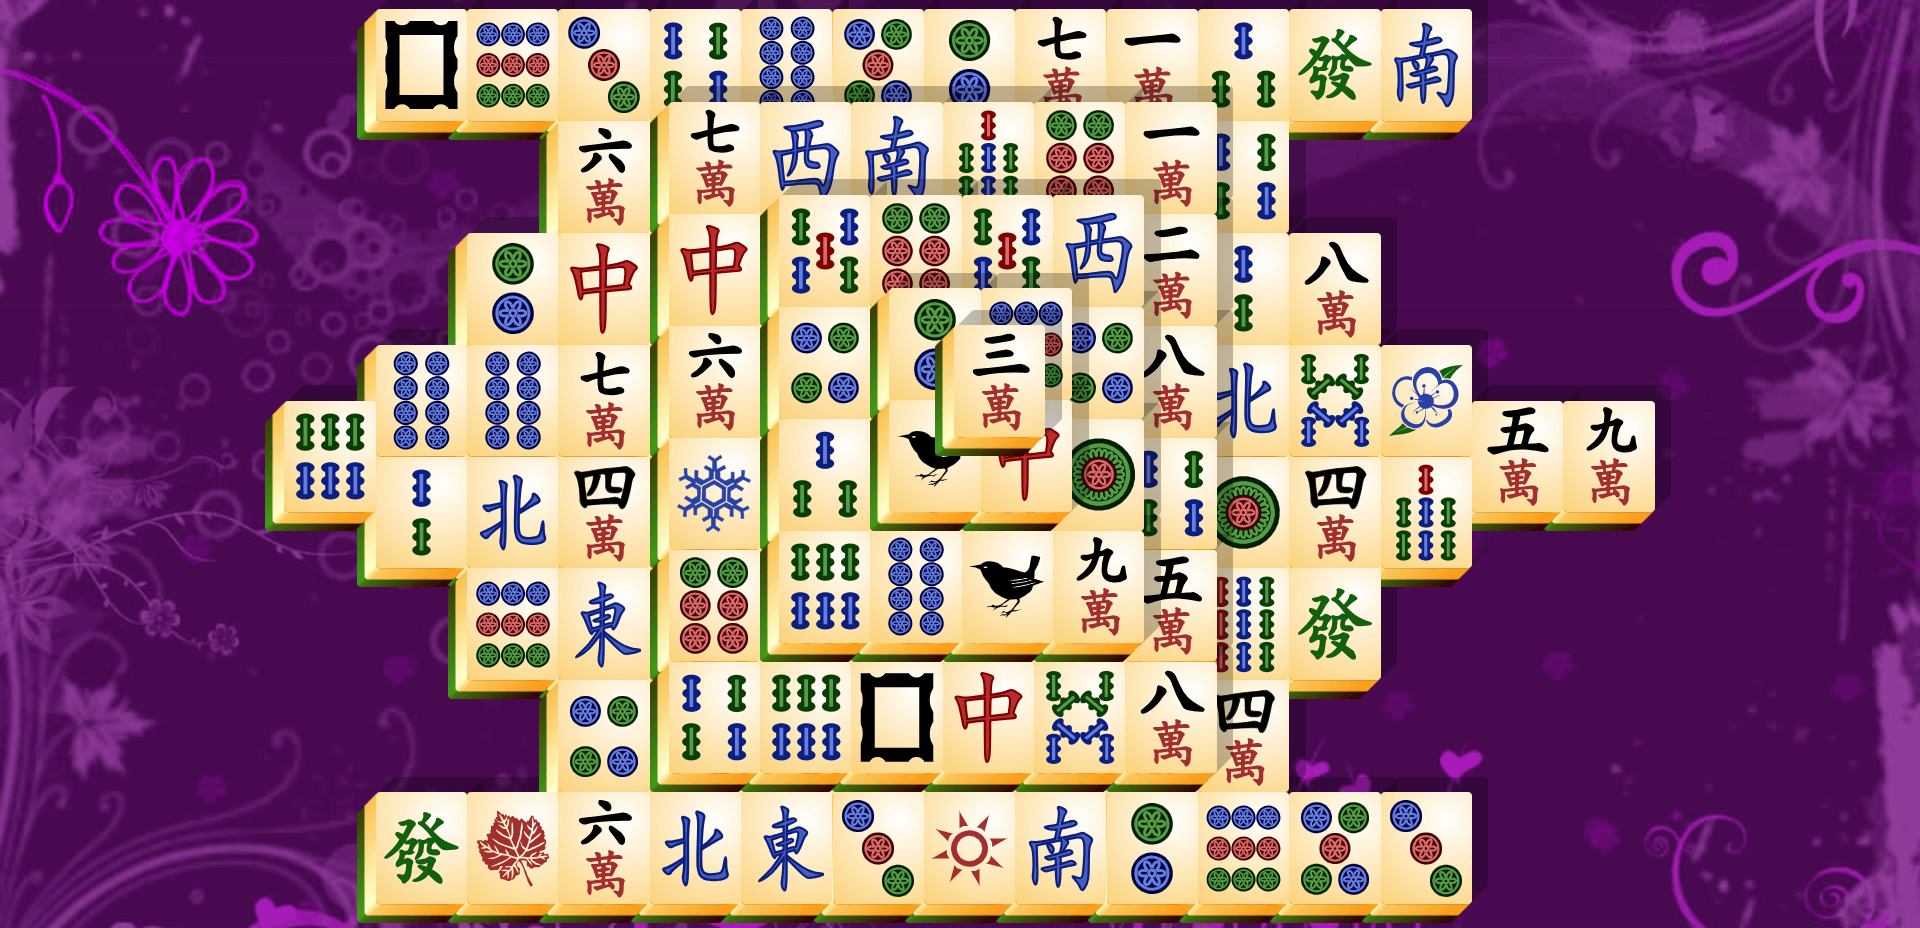 Mahjong Titans (2008)